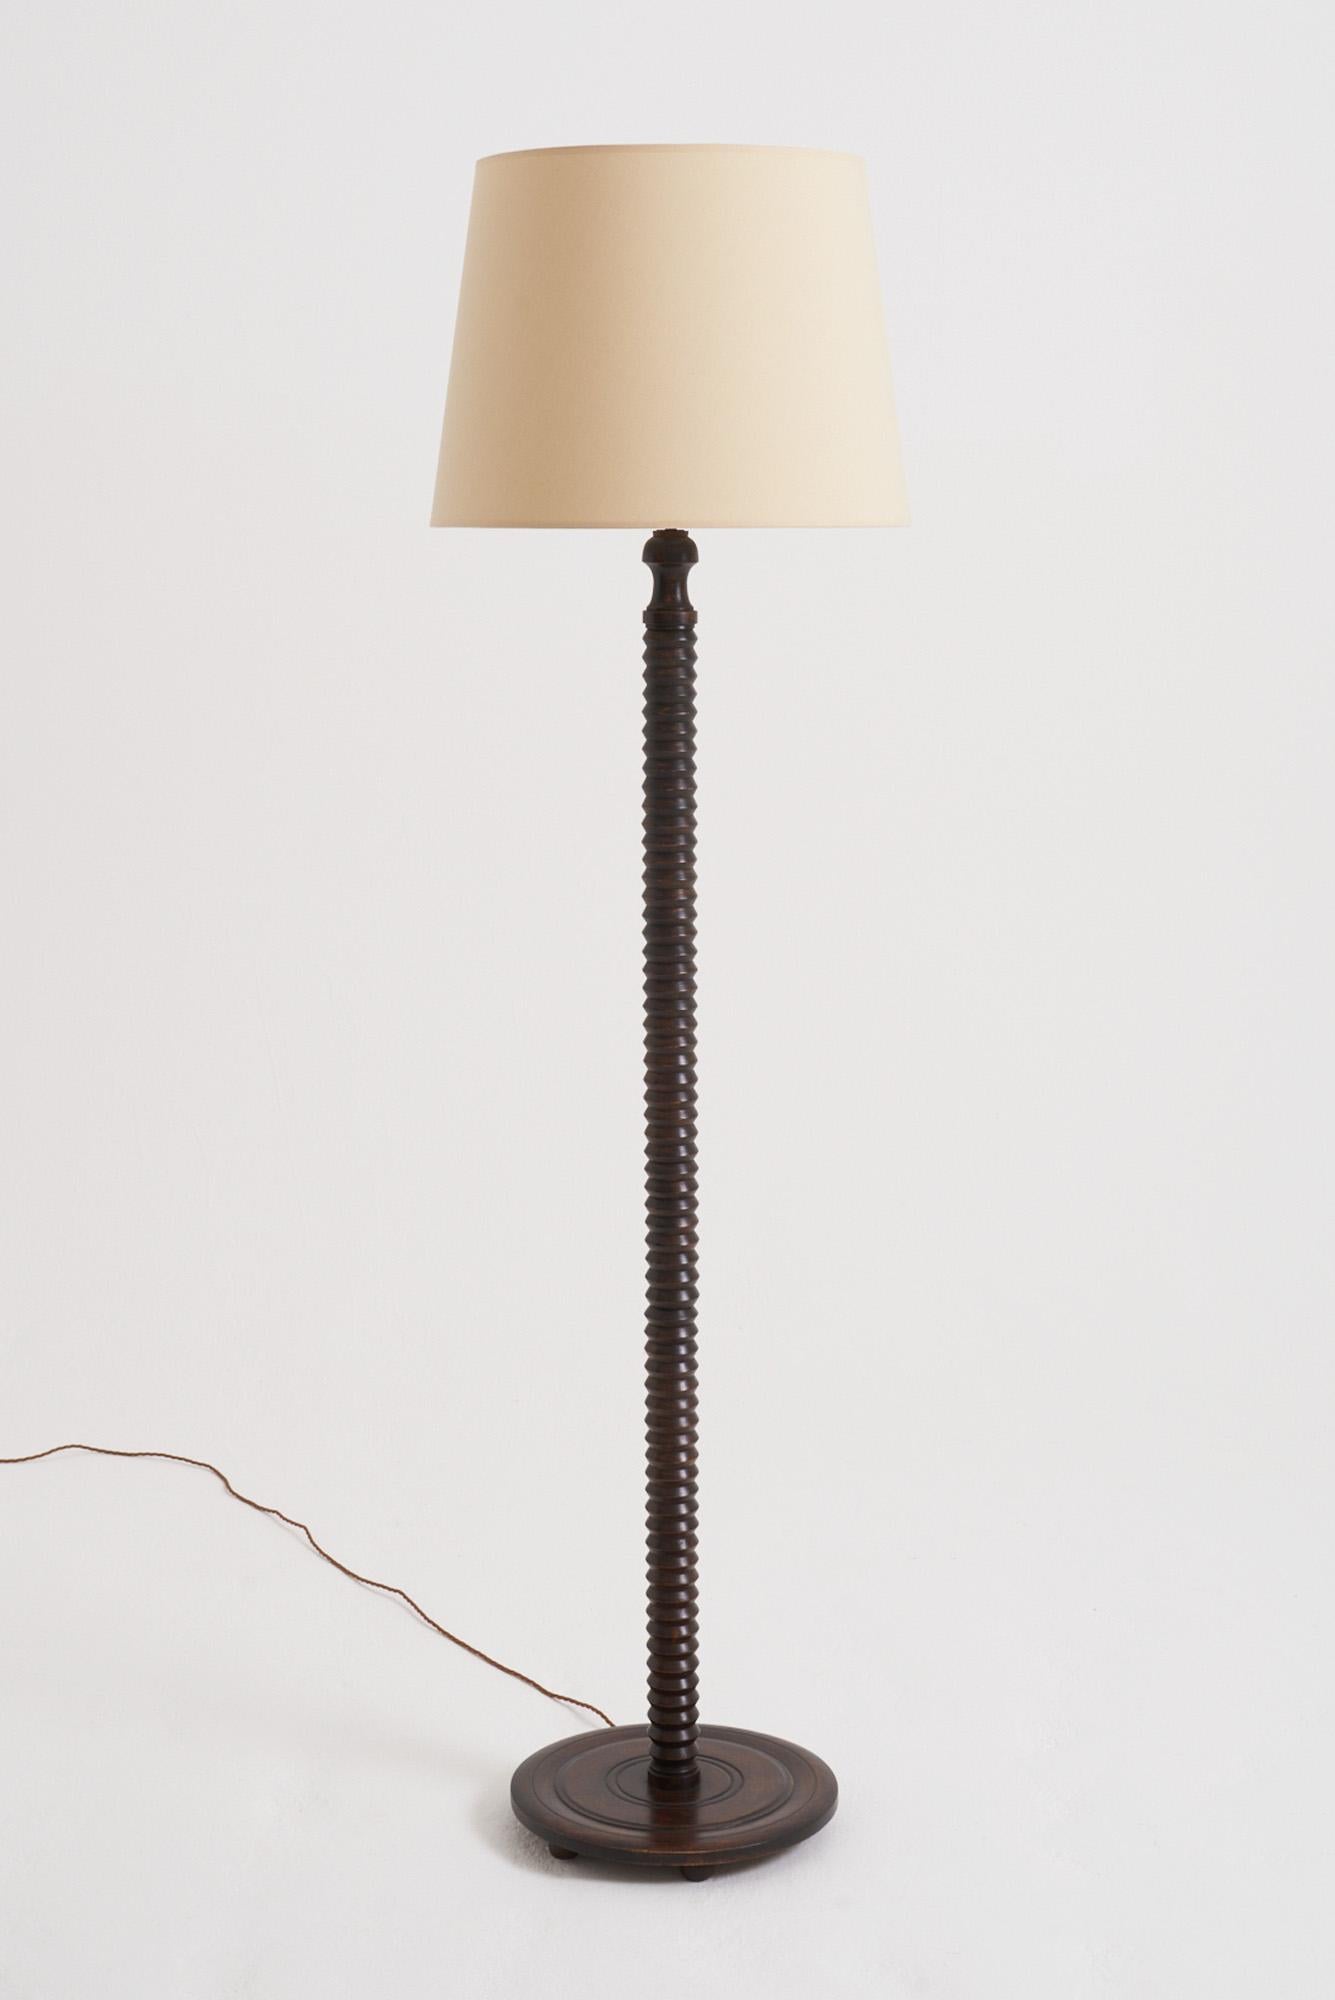 Lampadaire en hêtre tourné
France, Vers 1940
Avec l'abat-jour : 185 cm de haut par 51 cm de diamètre
Base de la lampe uniquement : 159 cm de haut par 36 cm de diamètre